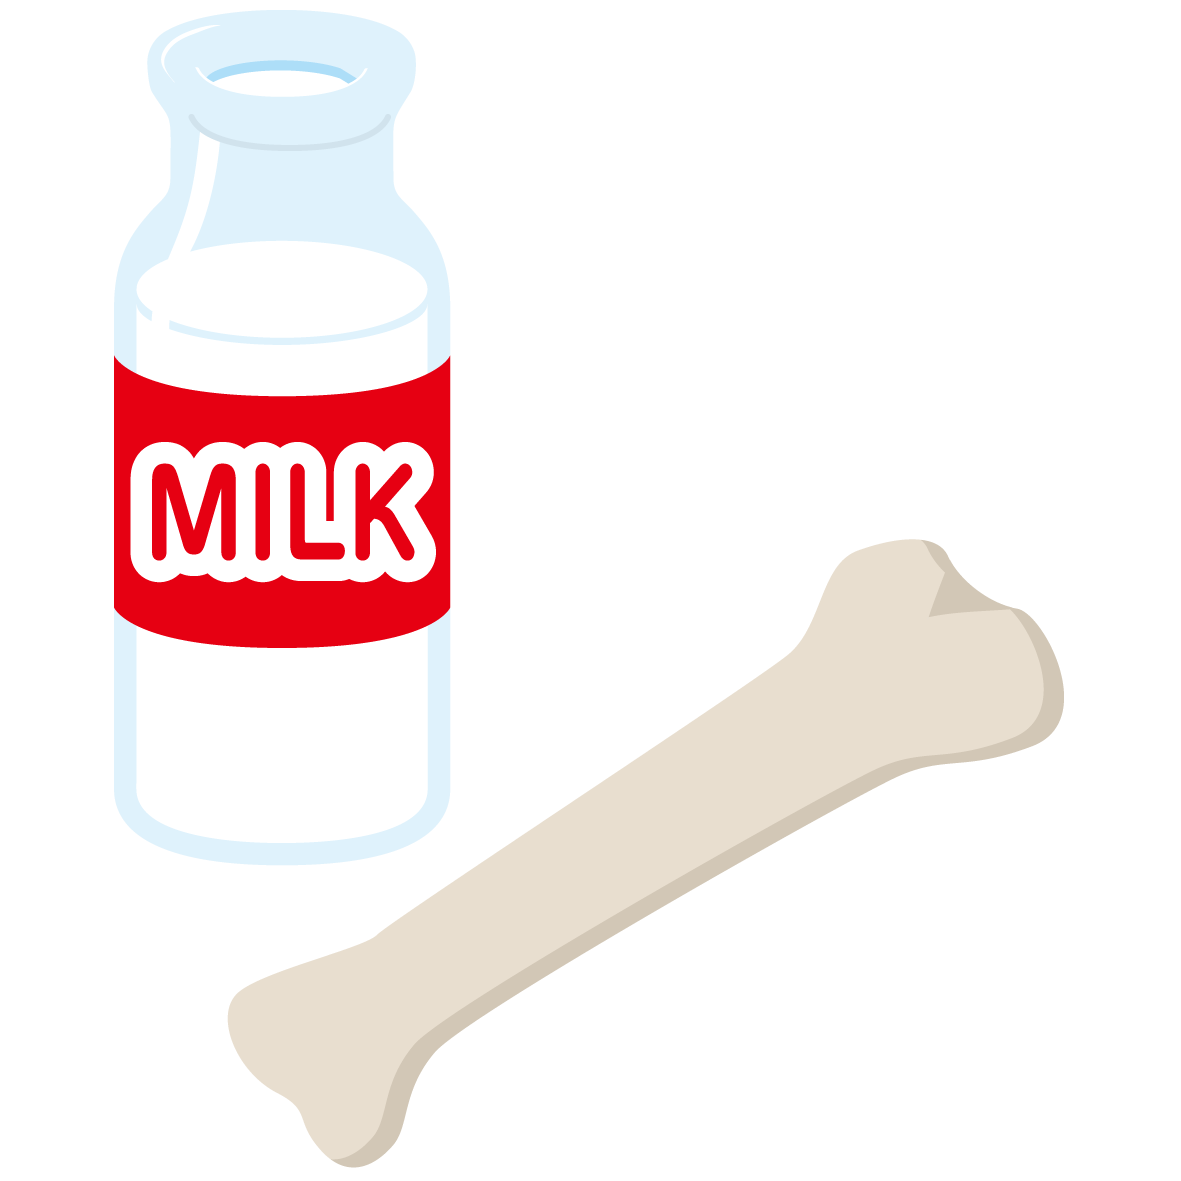 牛乳 乳製品イラスト 一般社団法人ｊミルク Japan Dairy Association J Milk